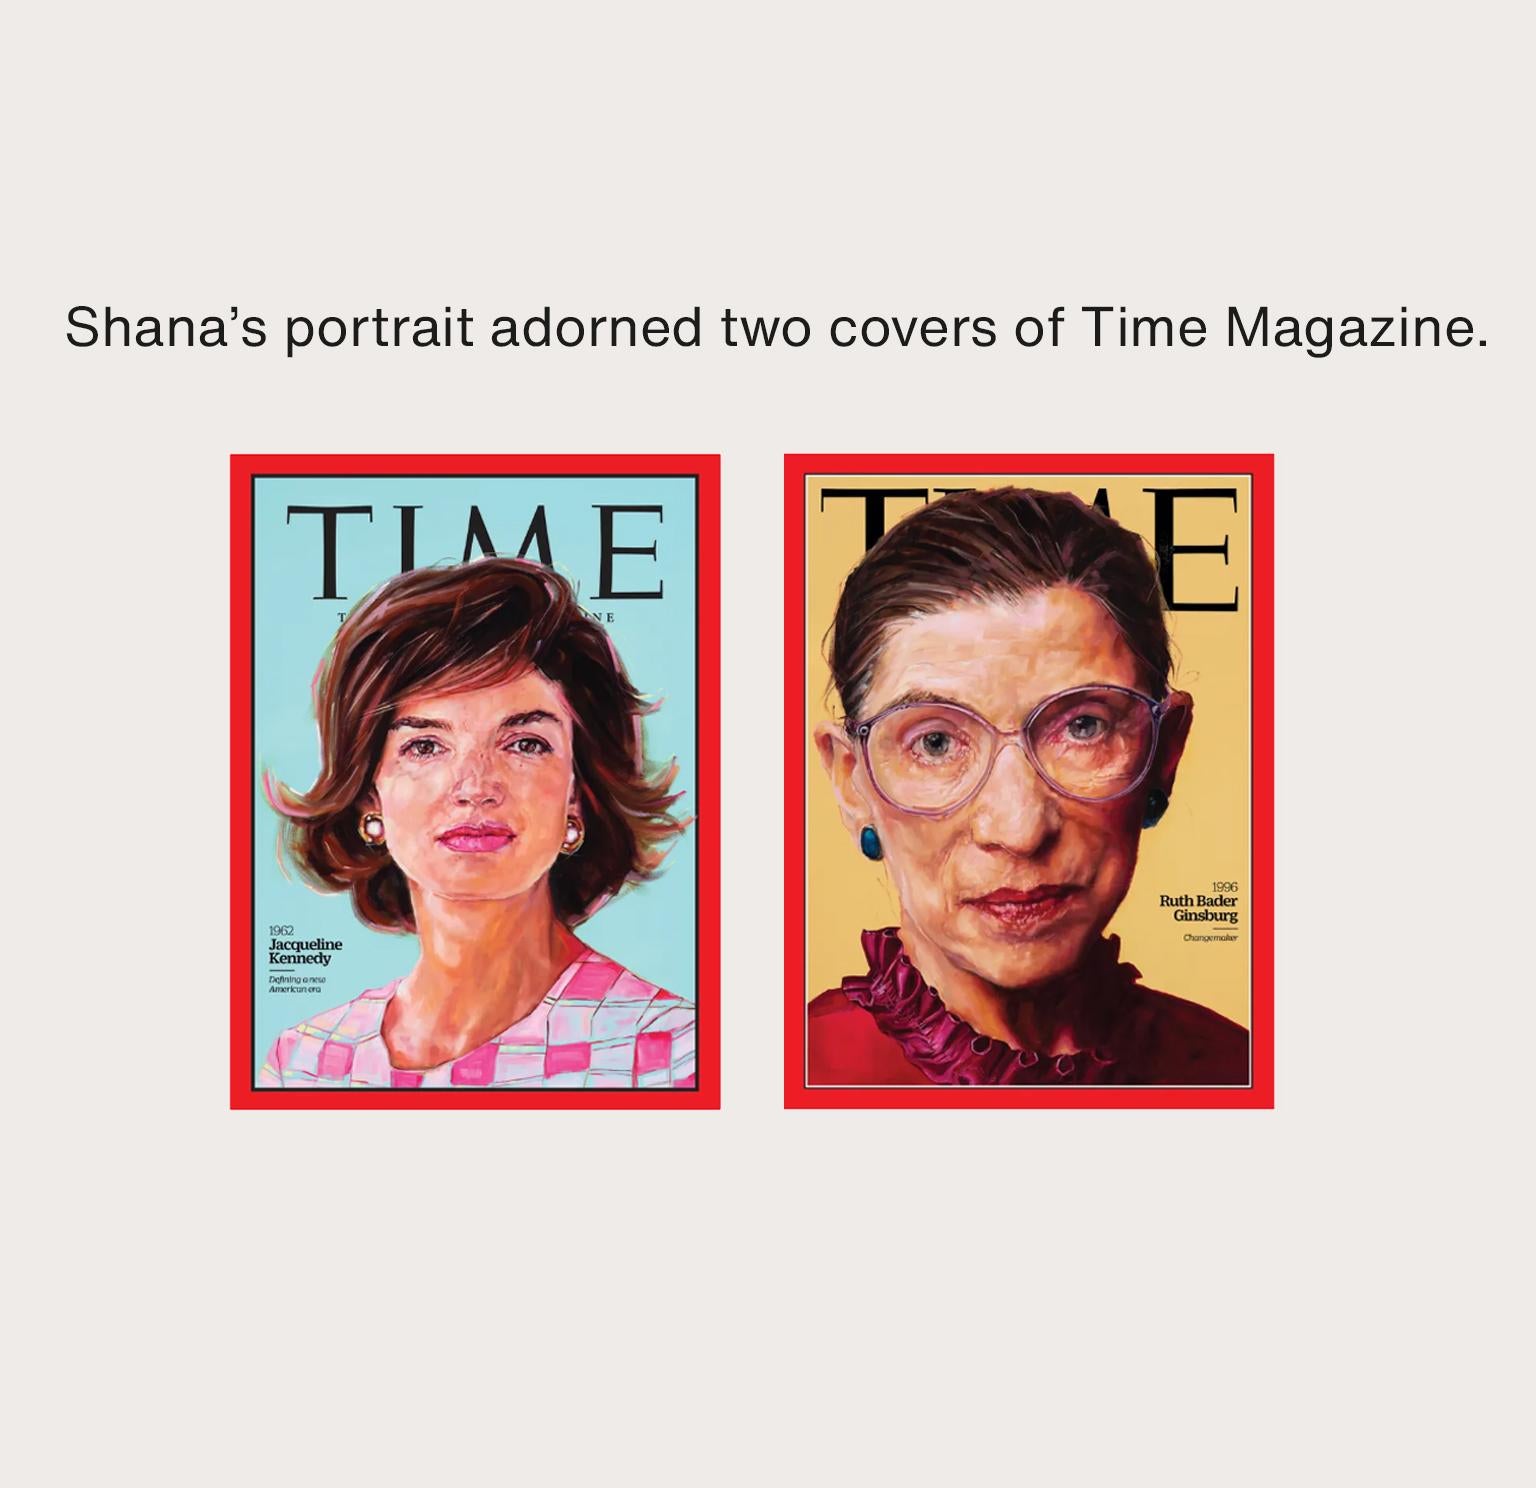 Les portraits de Shana ont orné deux couvertures du Time Magazine.
 
Le travail de Shana porte sur le visage et les yeux. Visage jeune, visage vieux, noir ou blanc. Ses sujets sont confus, solitaires, dépenaillés et désolés. Une fois que nous avons